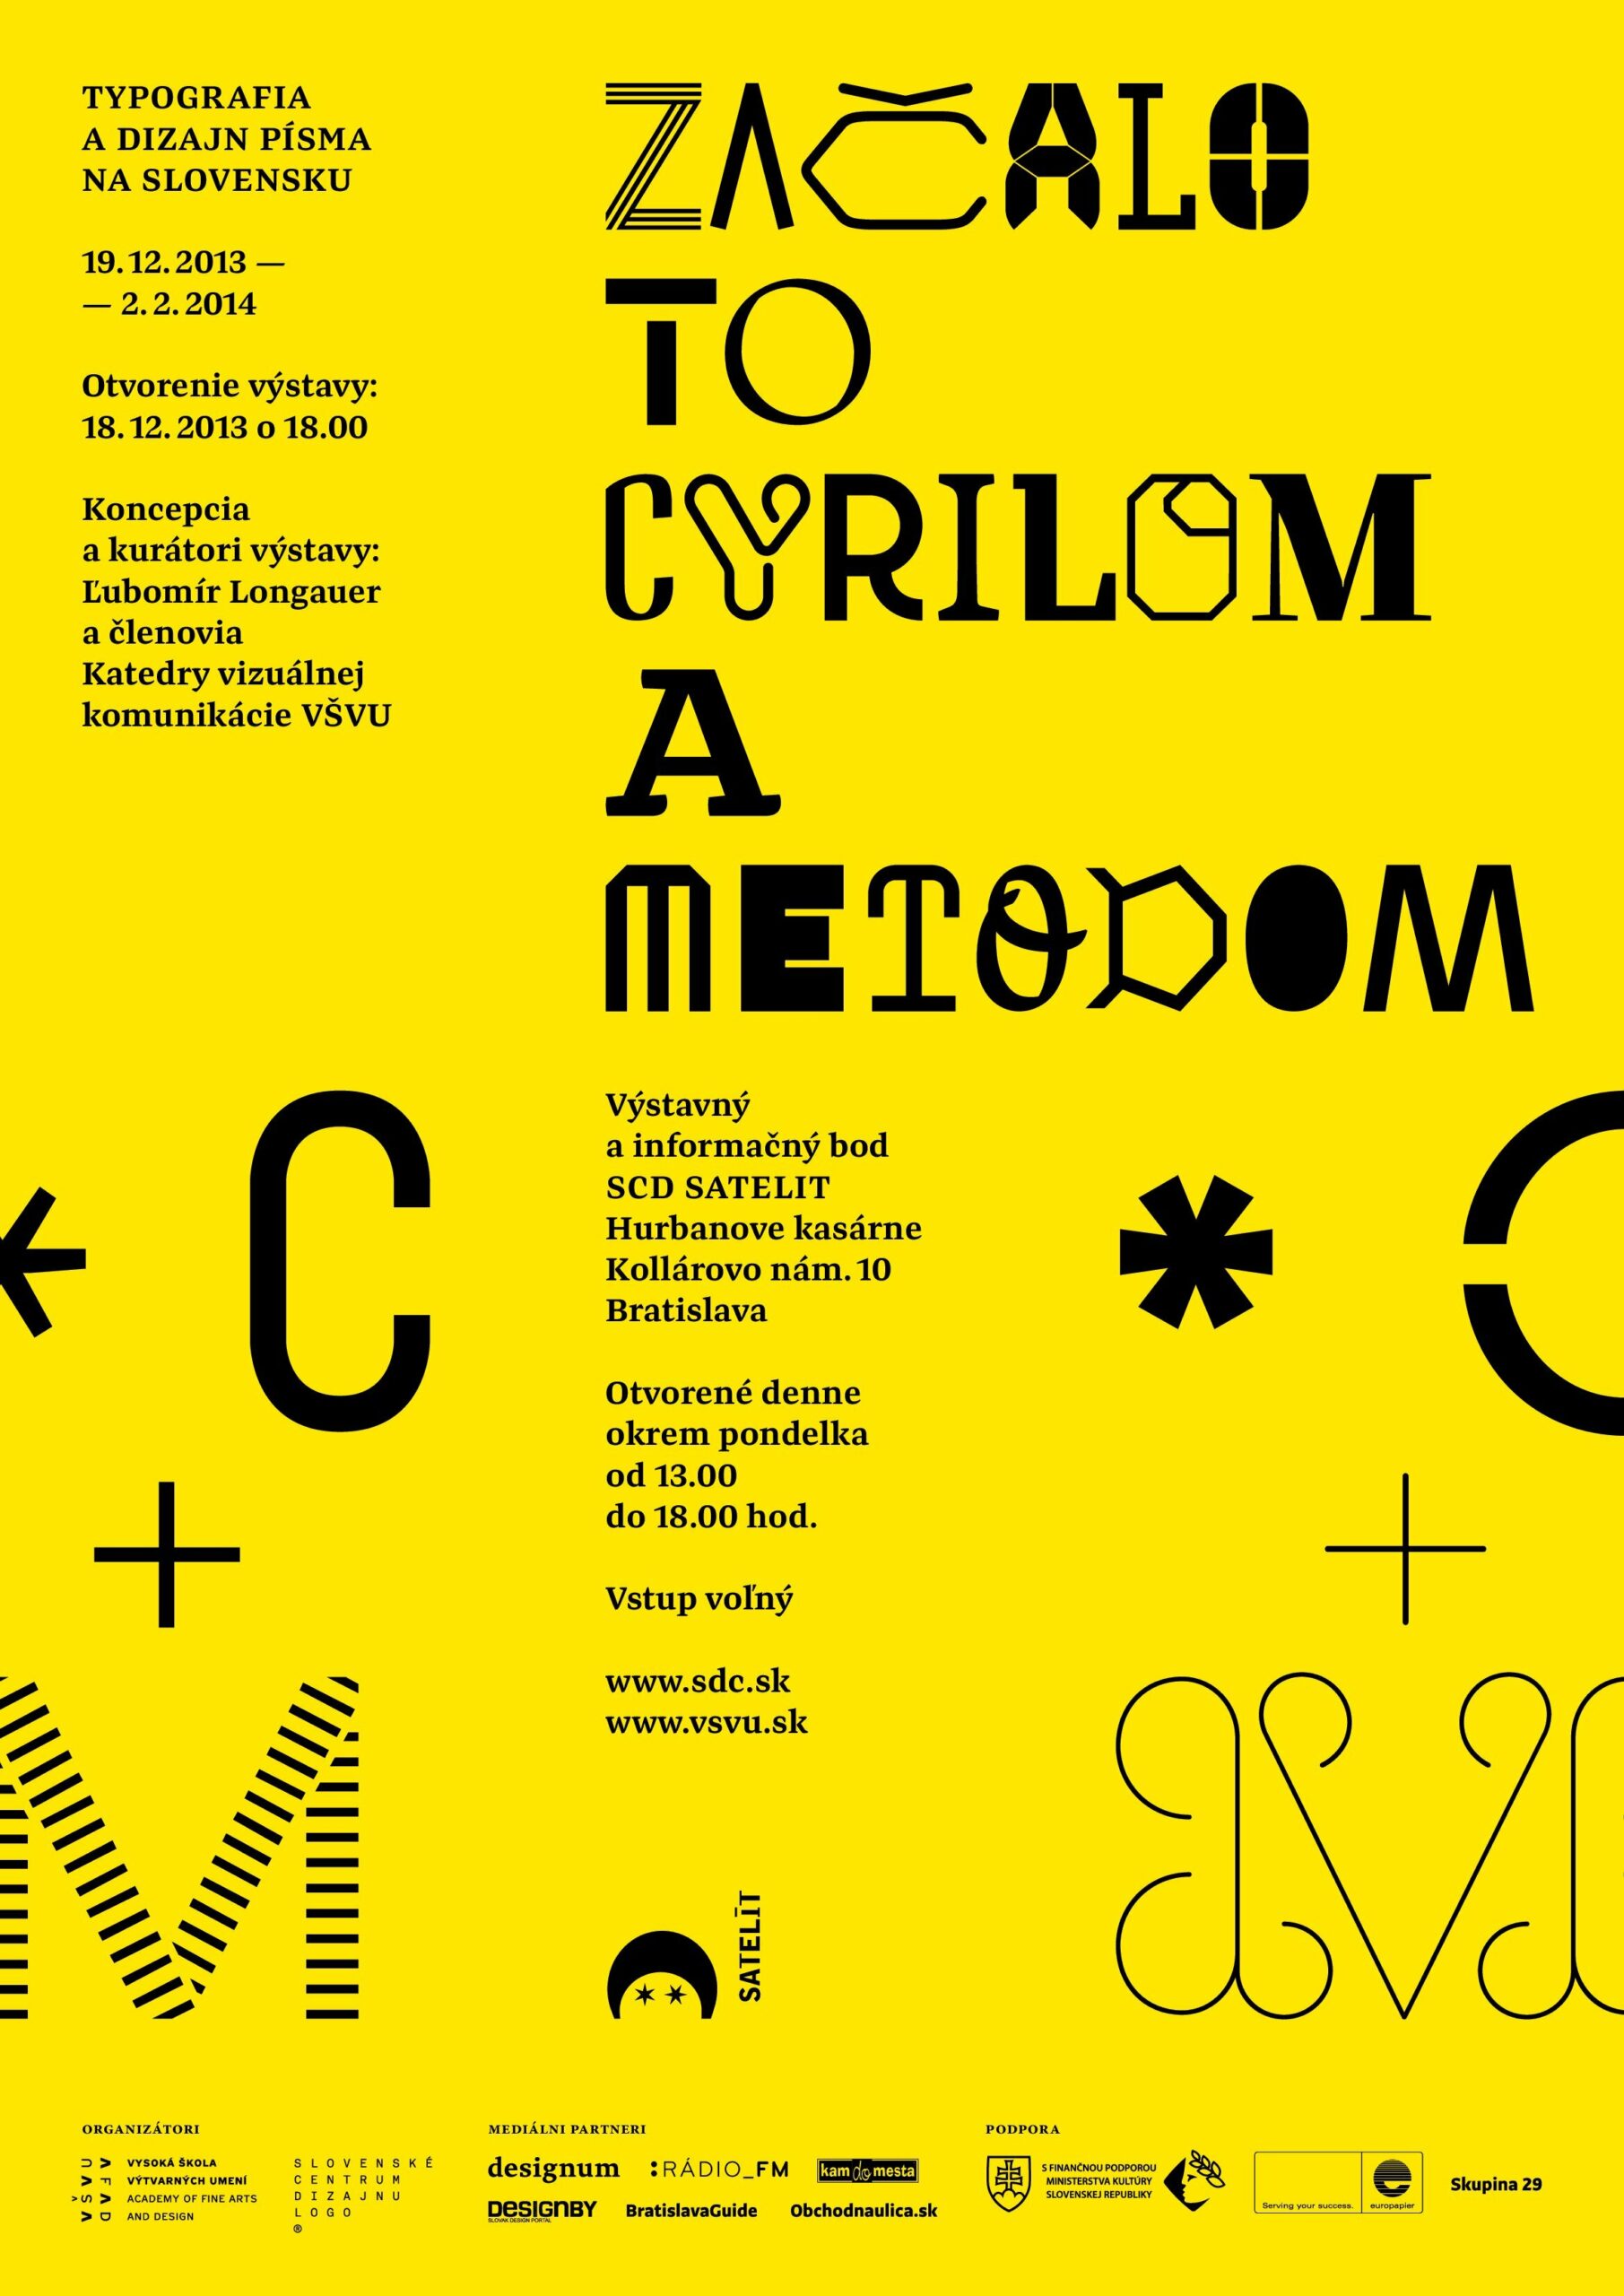 Typografia a dizajn písma na Slovensku – Začalo to Cyrilom a Metodom